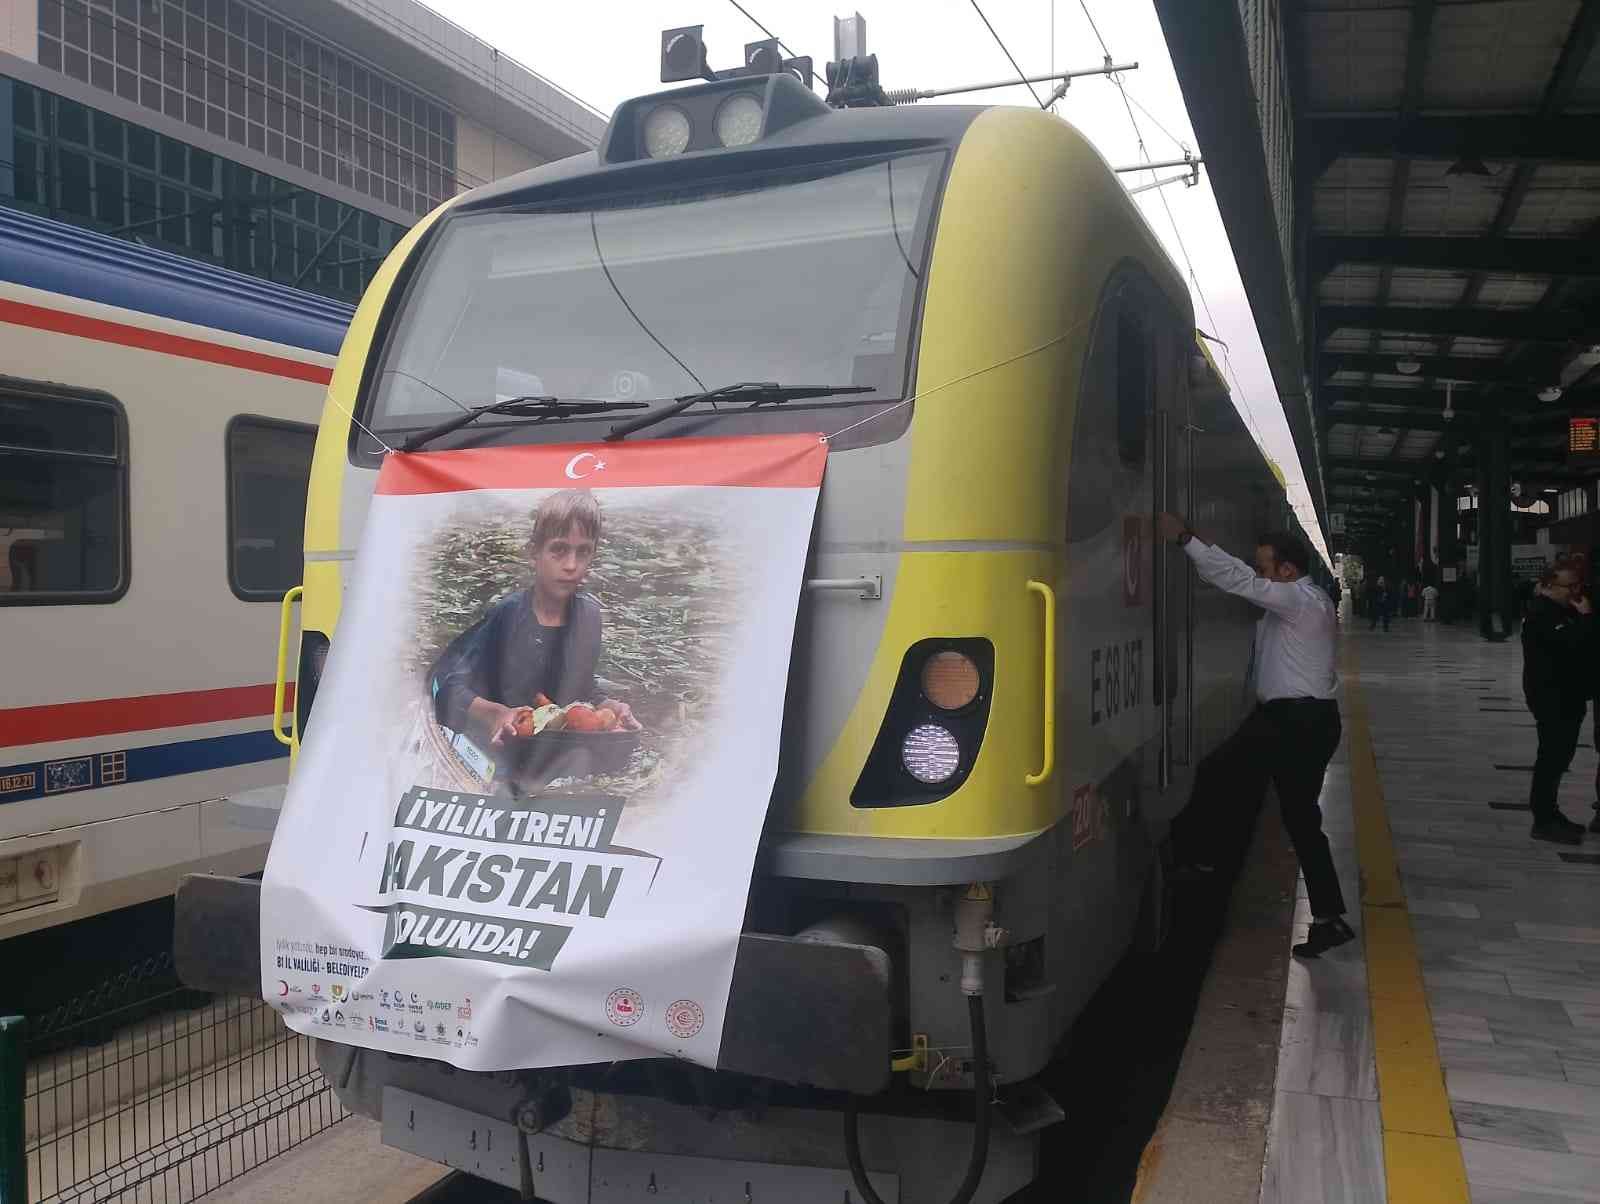 8’inci ve 9’uncu İyilik Treni Pakistan’a uğurlandı